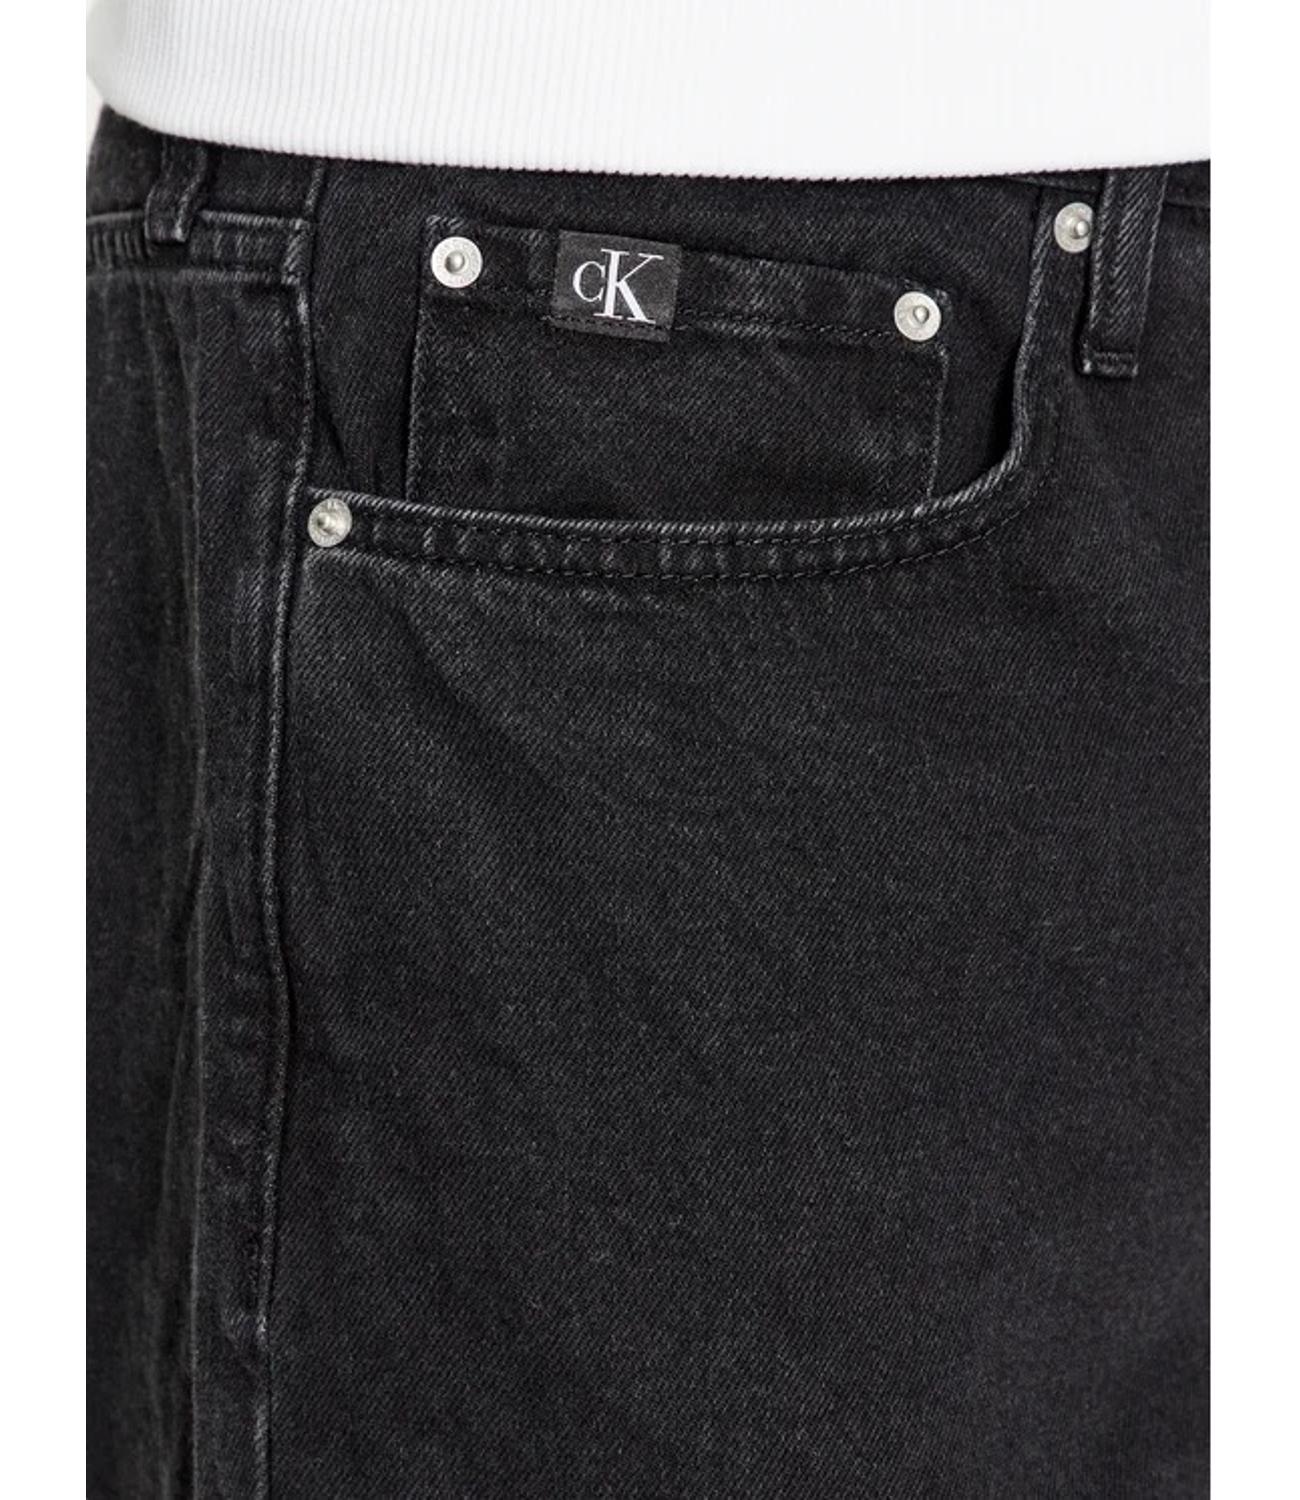 Regular black washed denim jeans for men